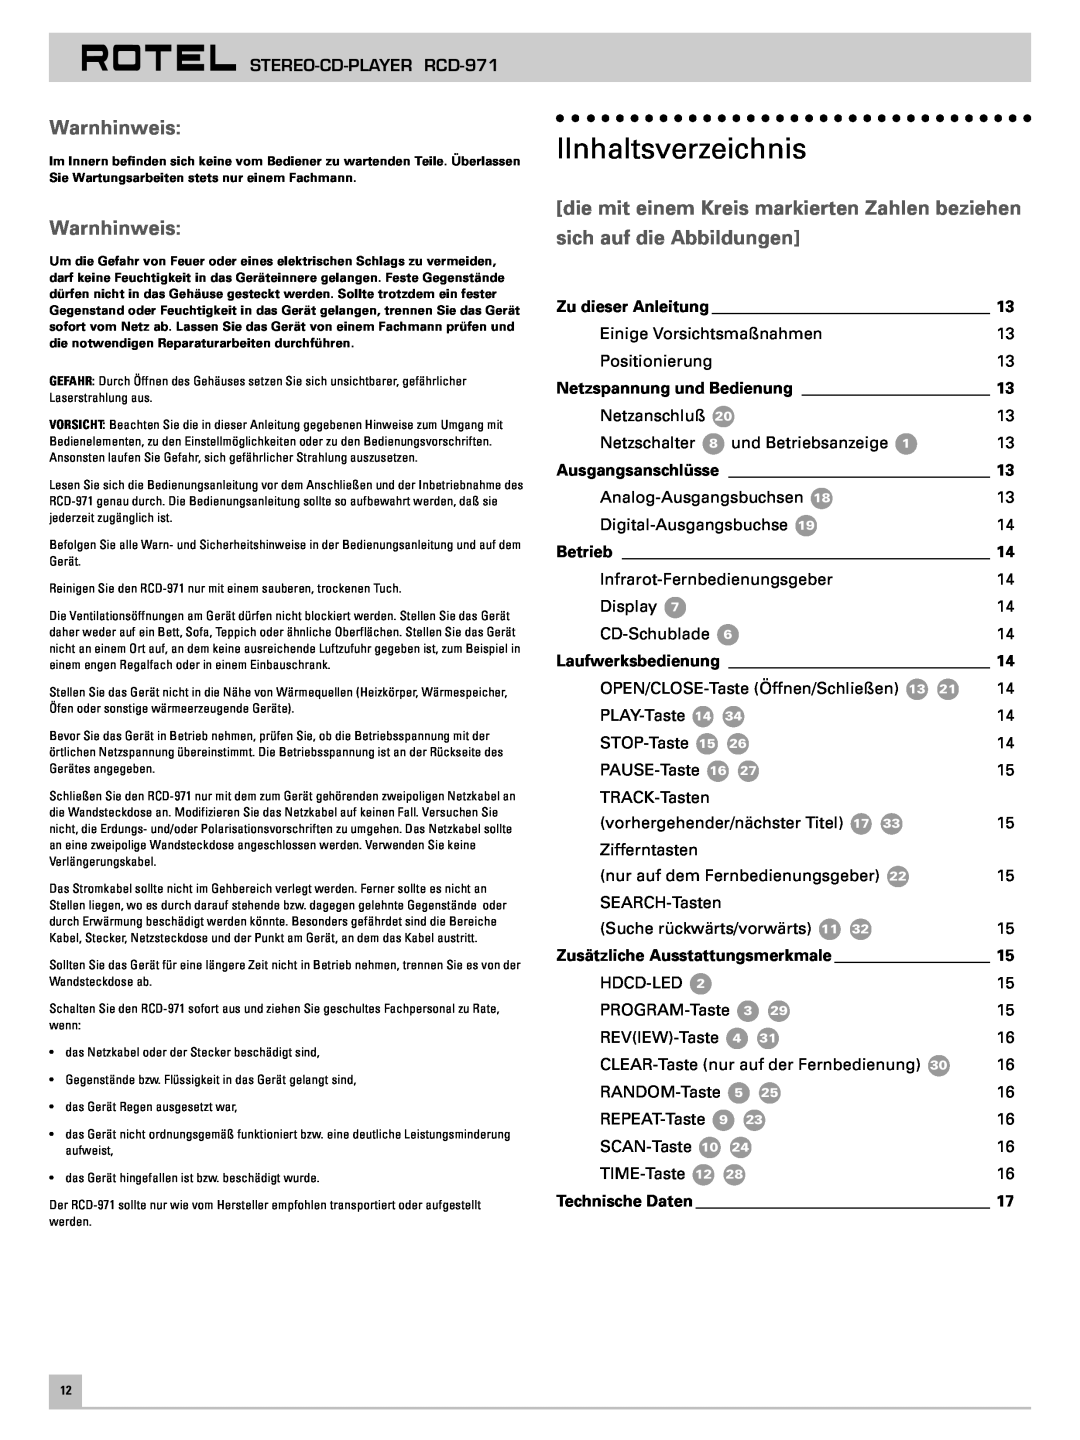 Rotel RCD-971 IInhaltsverzeichnis, Warnhinweis, die mit einem Kreis markierten Zahlen beziehen, sich auf die Abbildungen 